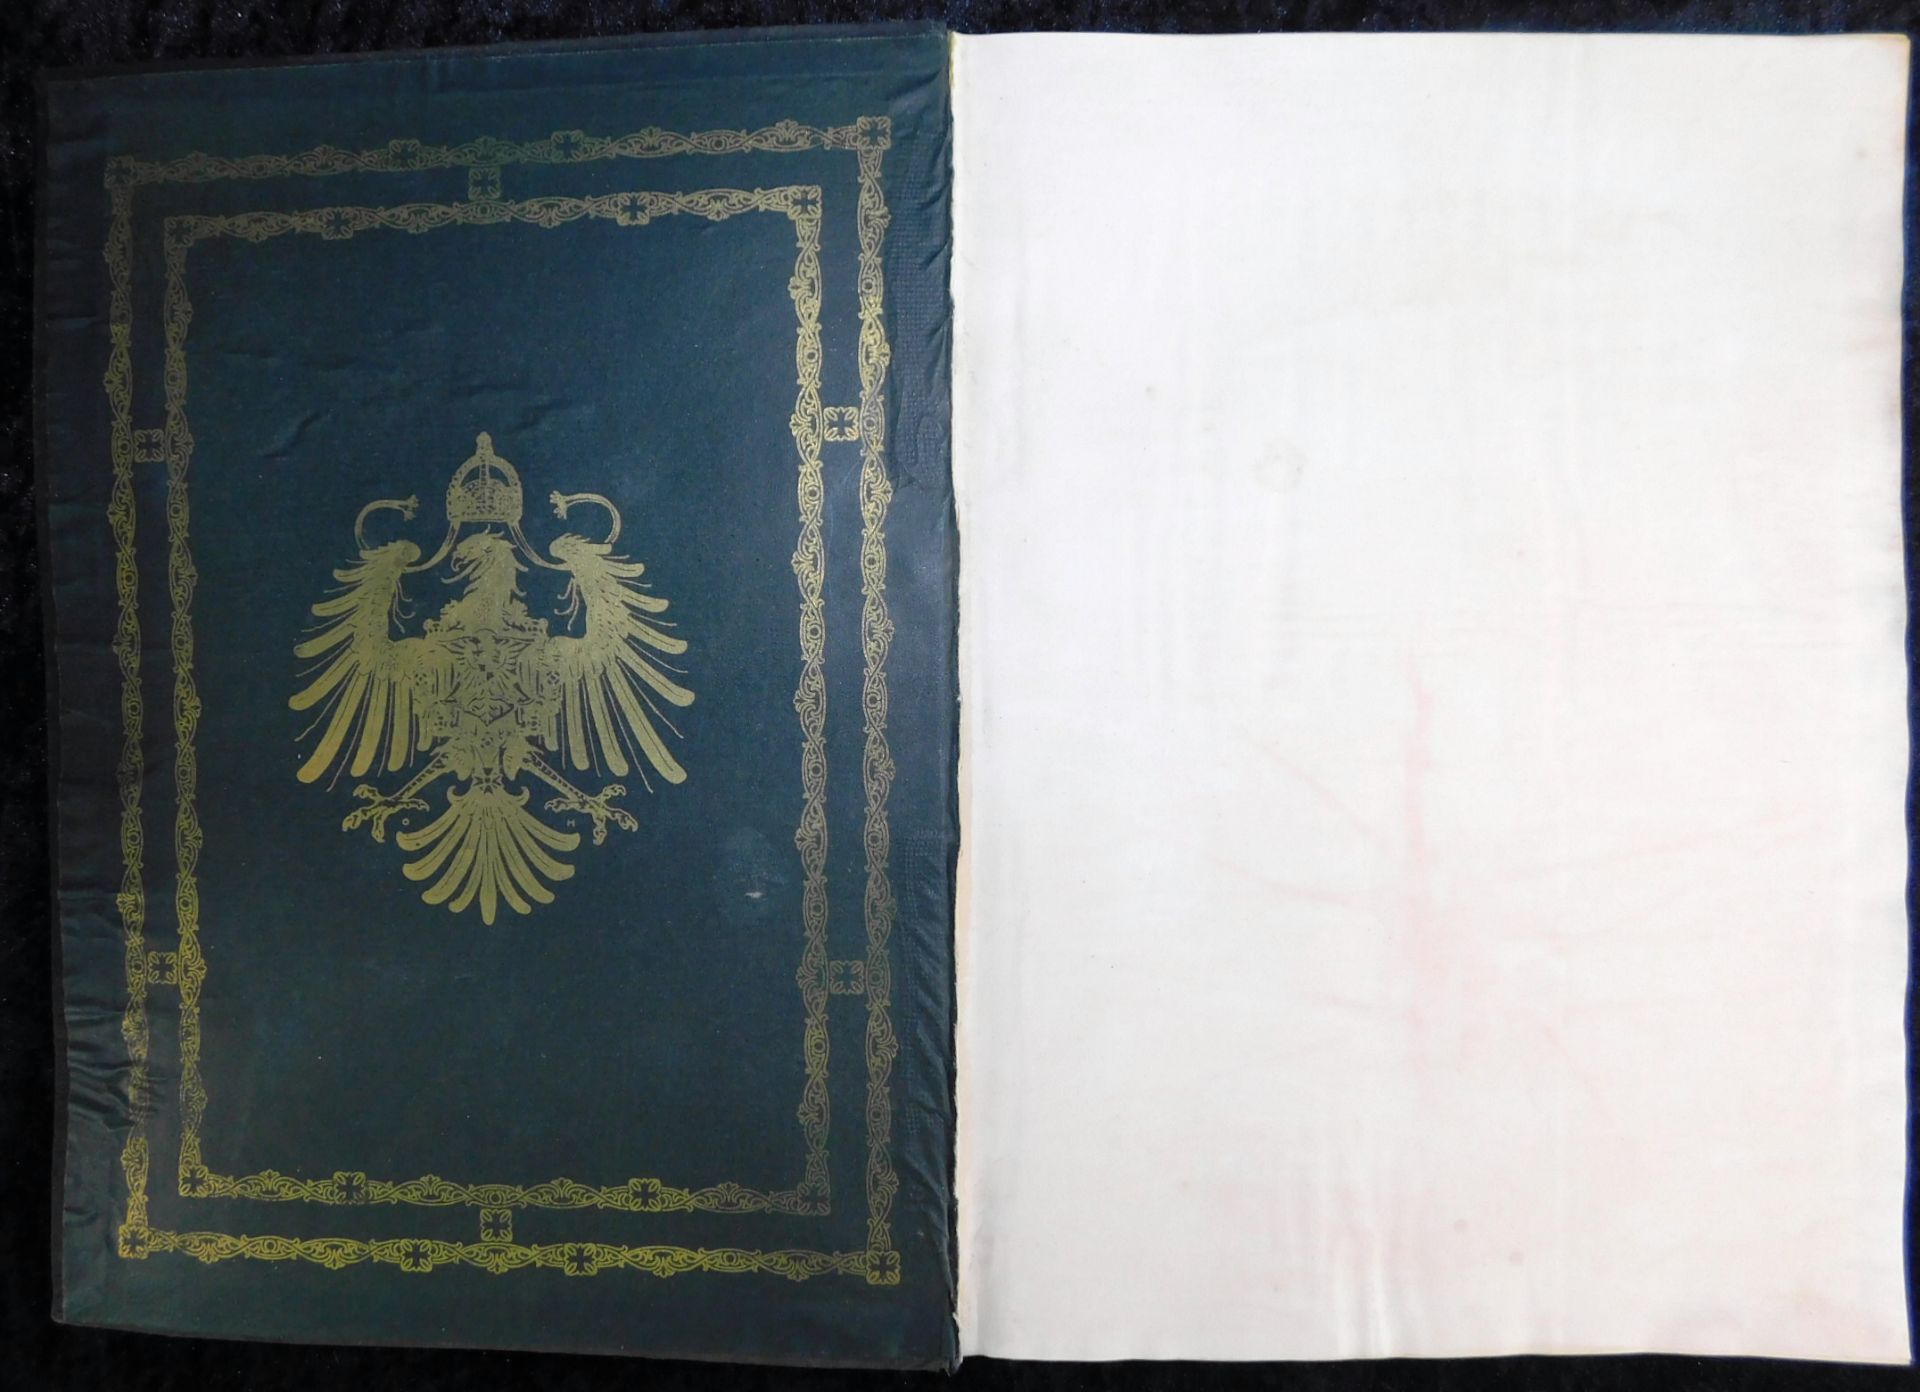 Großes Ehrenbuch 1914, Familienstammbuch, Verlag Joh.E.Hubens, Diessen/München - Image 2 of 7